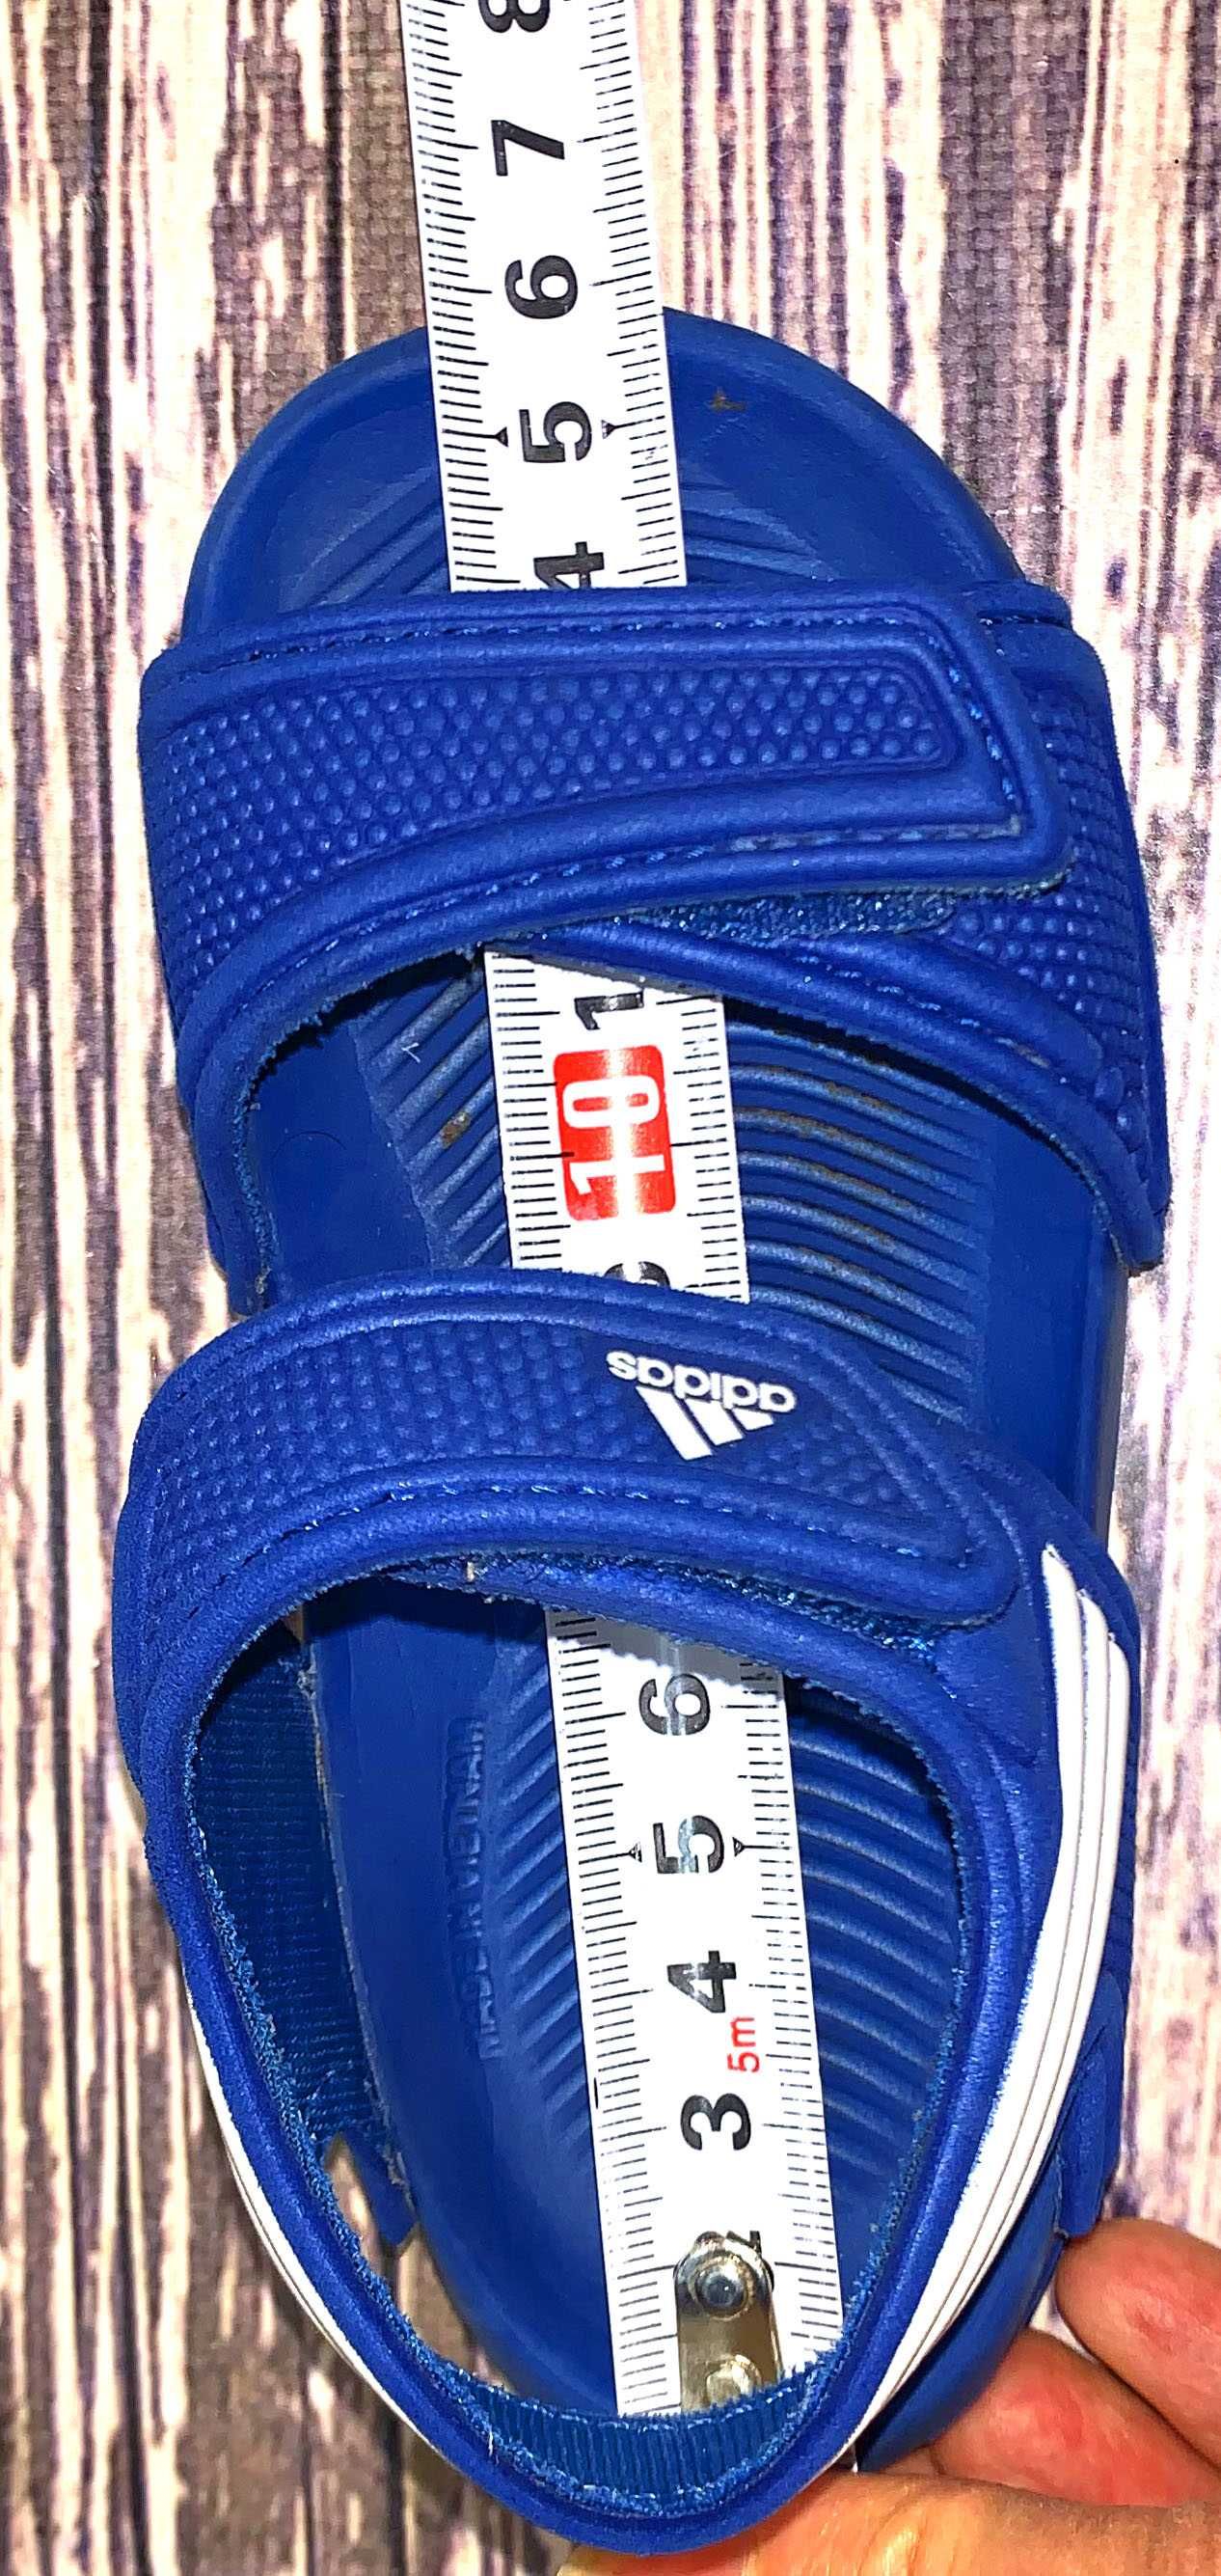 Босоножки Adidas для мальчика, размер 25 (14 cм)